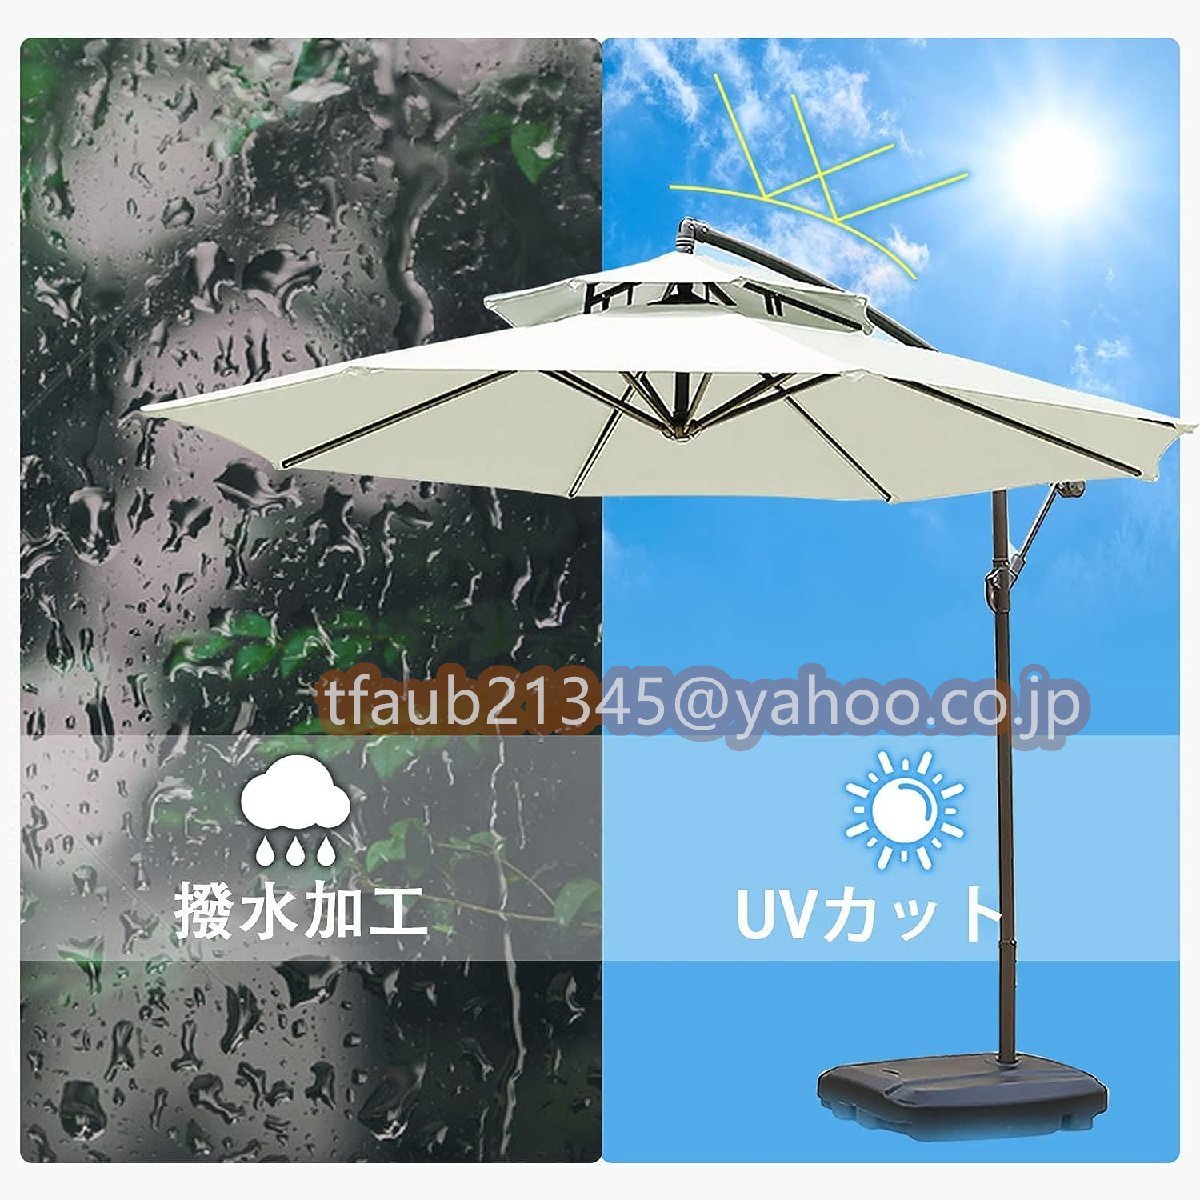  зонт сад зонт большой способ . сильный ( примерно ) диаметр 270cm веранда висячий зонт UV cut водоотталкивающий регулировка угла основа . с чехлом современный 